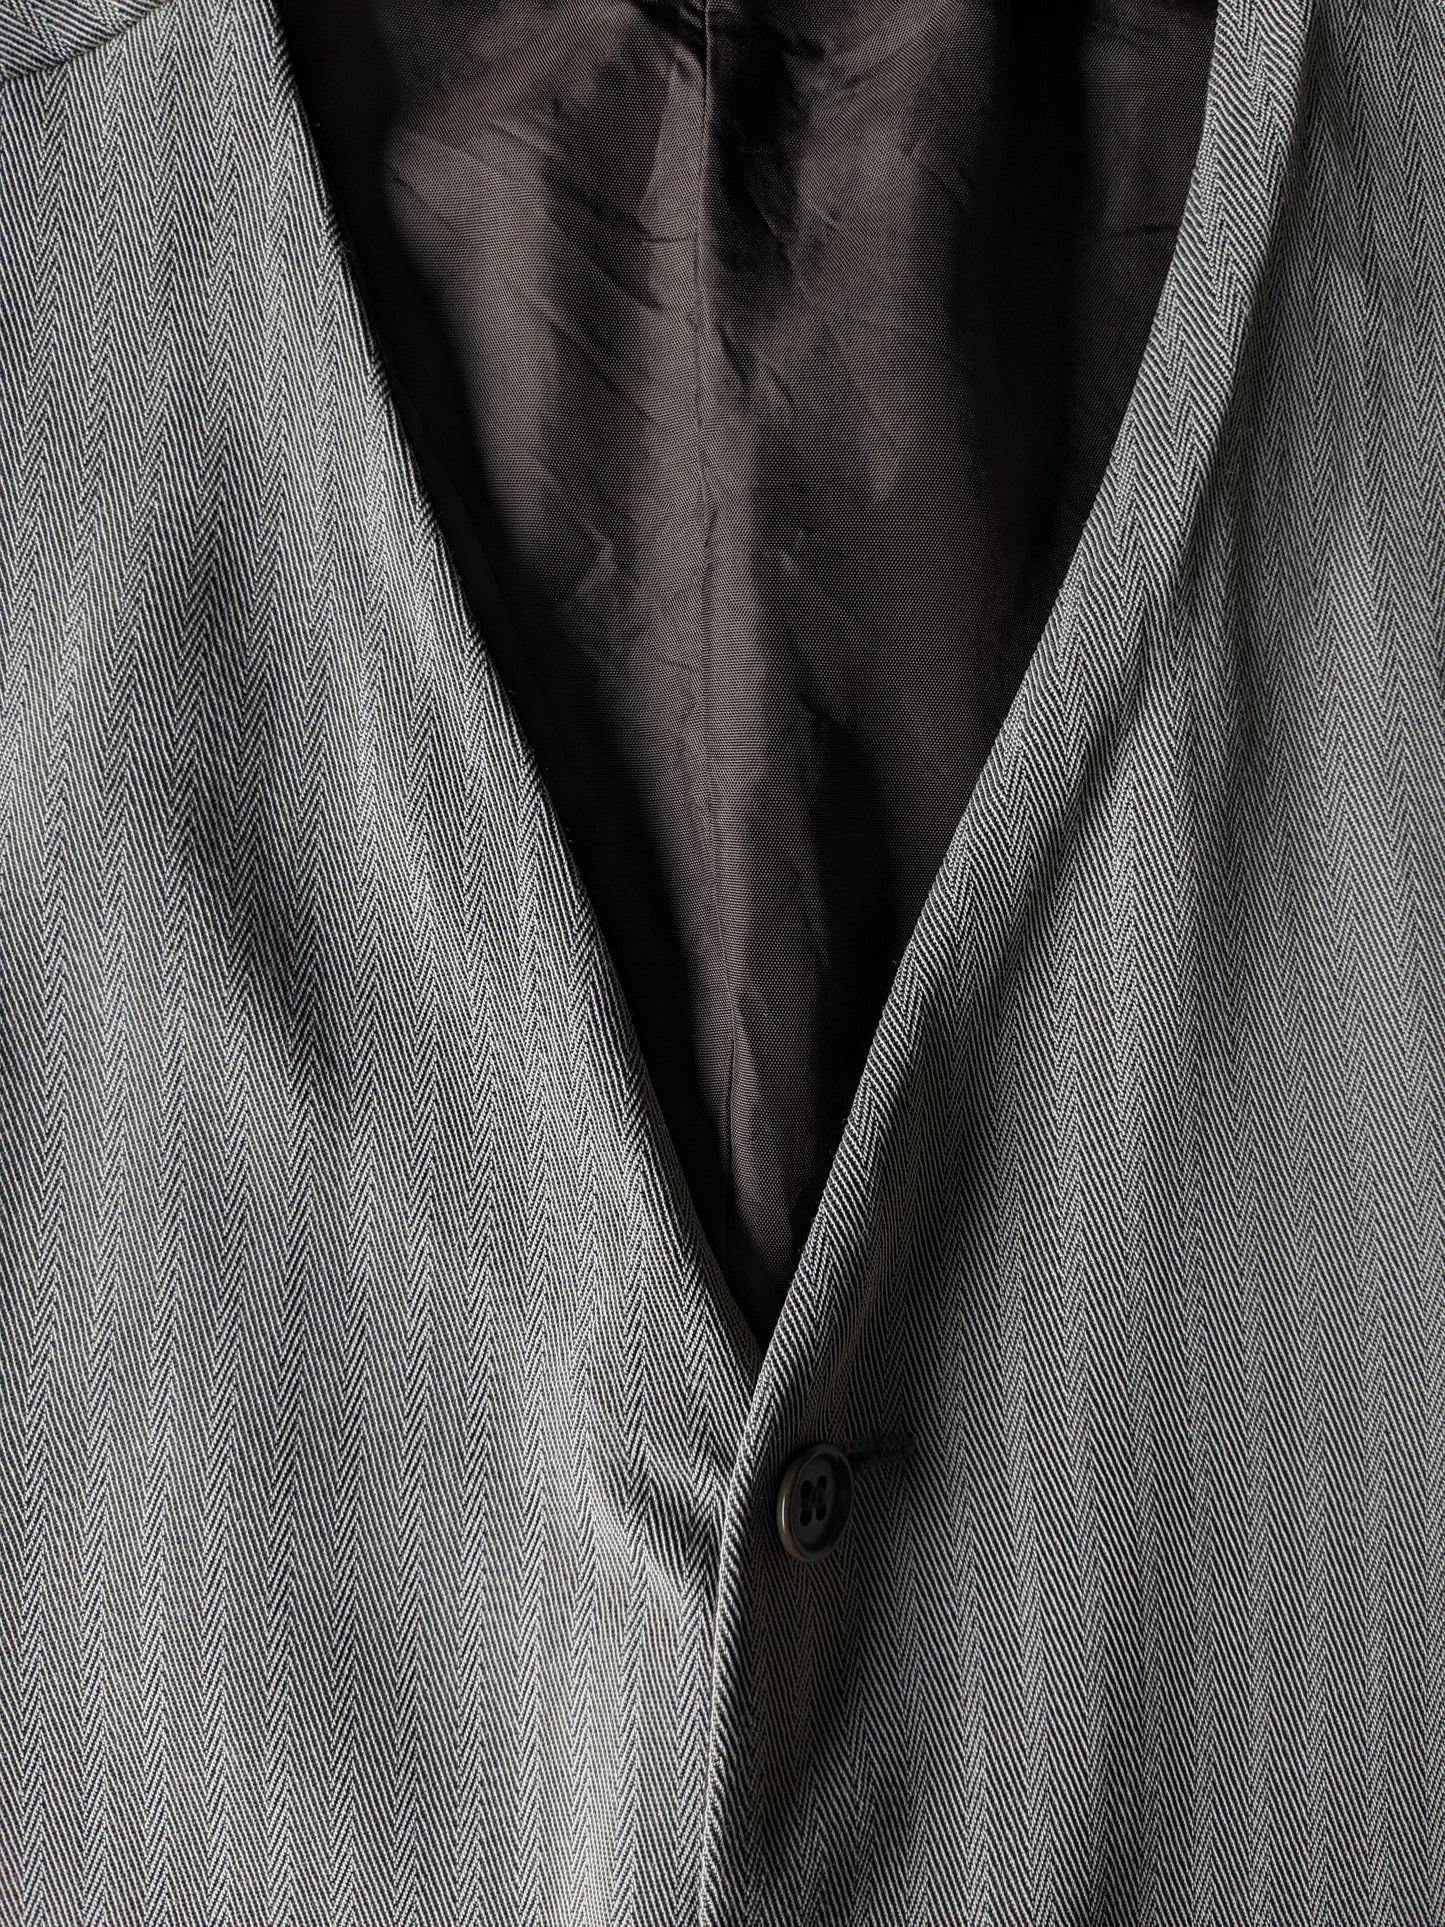 Vintage waistcoat. Light brown herringbone motif. Size 50 / M.